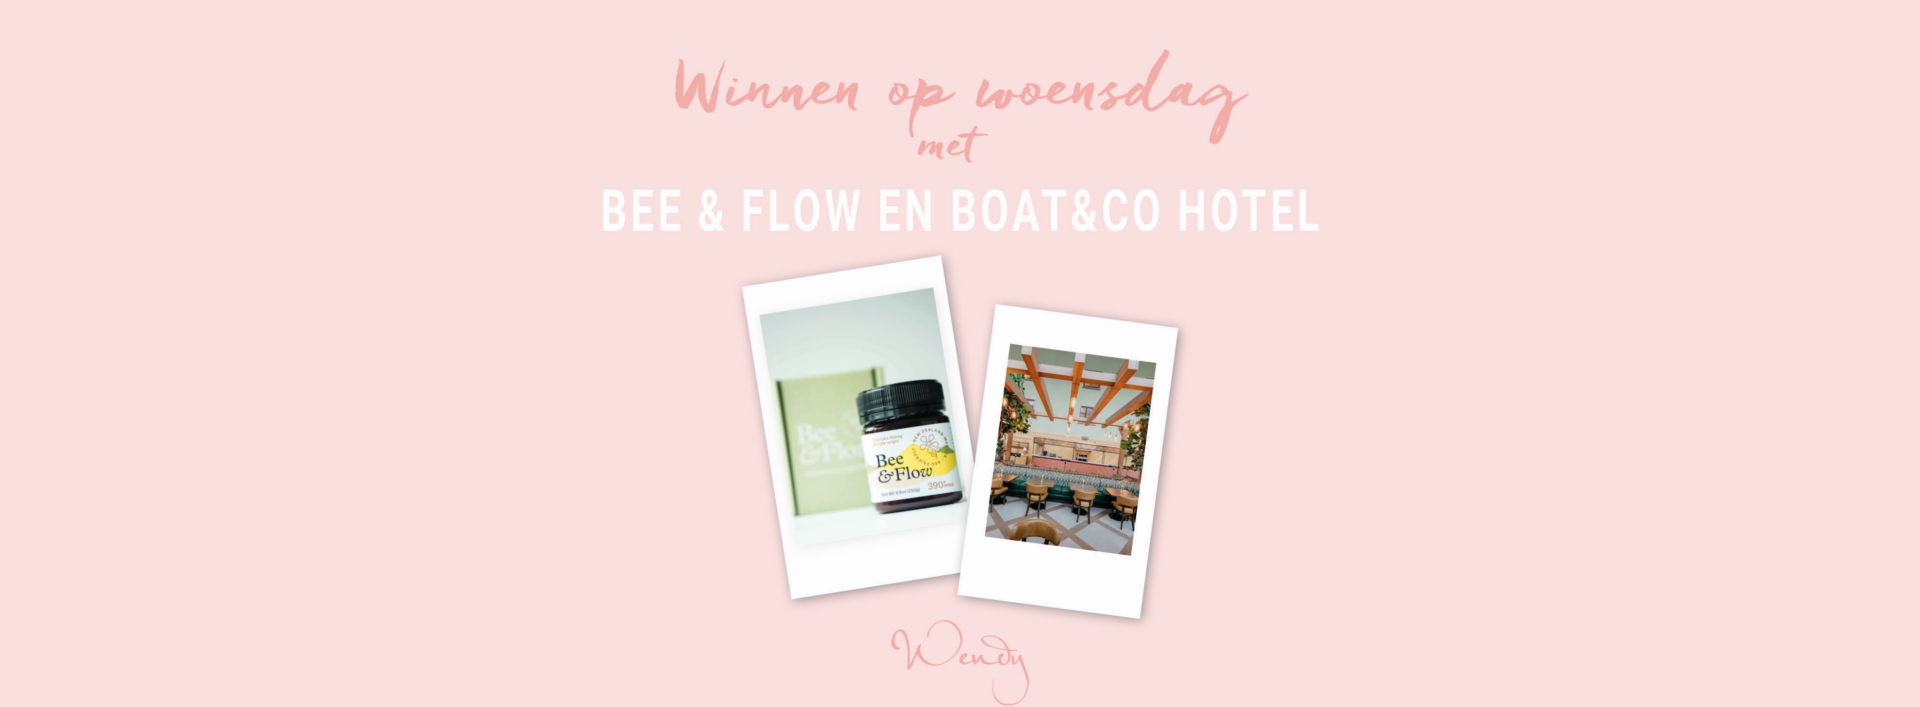 Header voorstel2 Winnen op woensdag: Bee & Flow Manuka Honing beauty set incl. overnachting bij het Boat & Co hotel